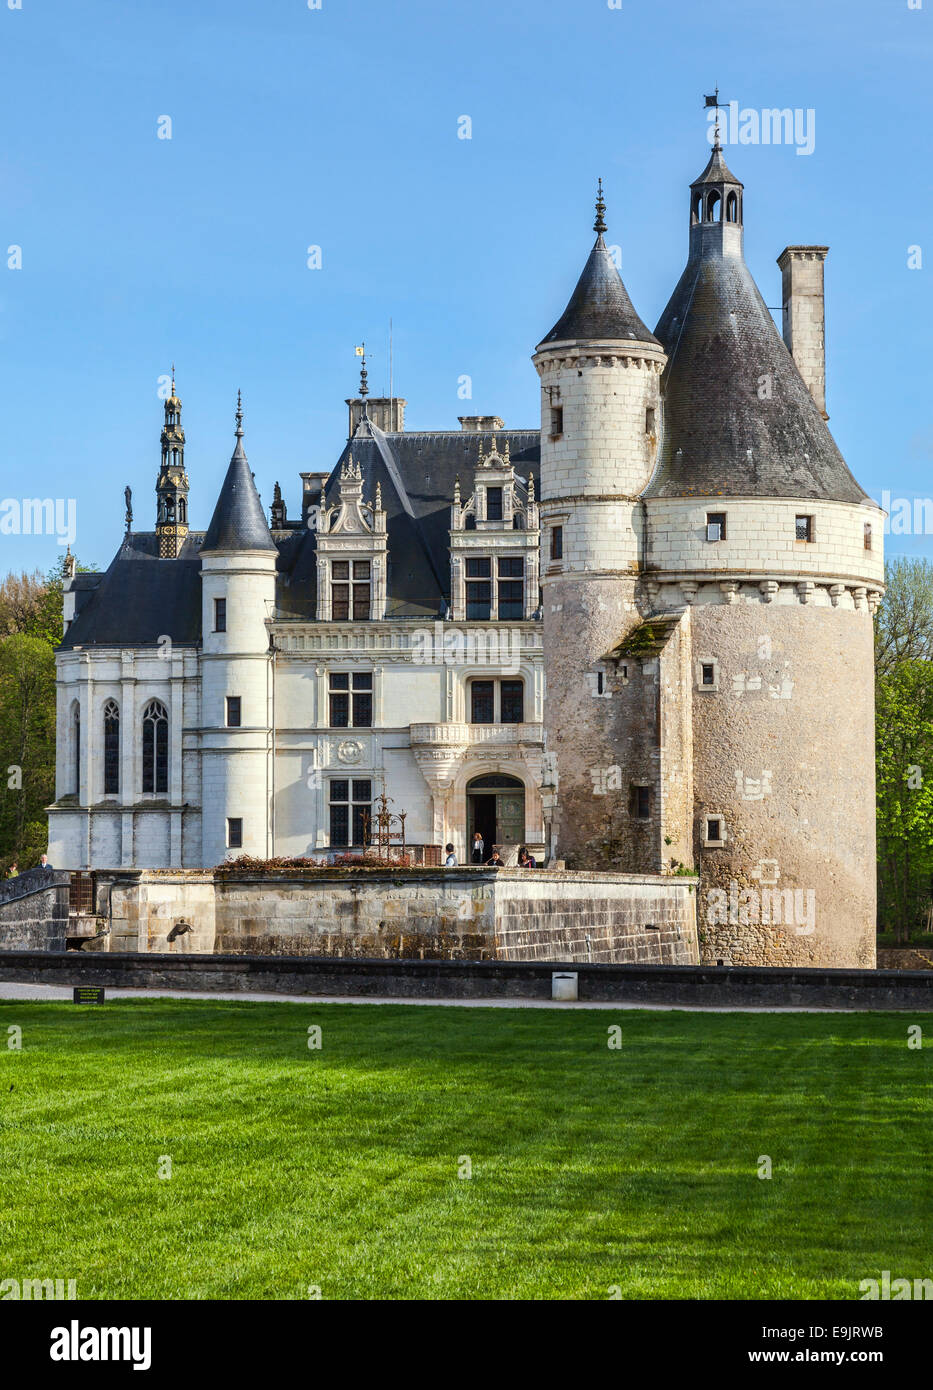 Image de la partie nord de la visite du Château de Chenonceau, l'un des plus célèbres des châteaux sur la vallée de la Loire, France. Banque D'Images